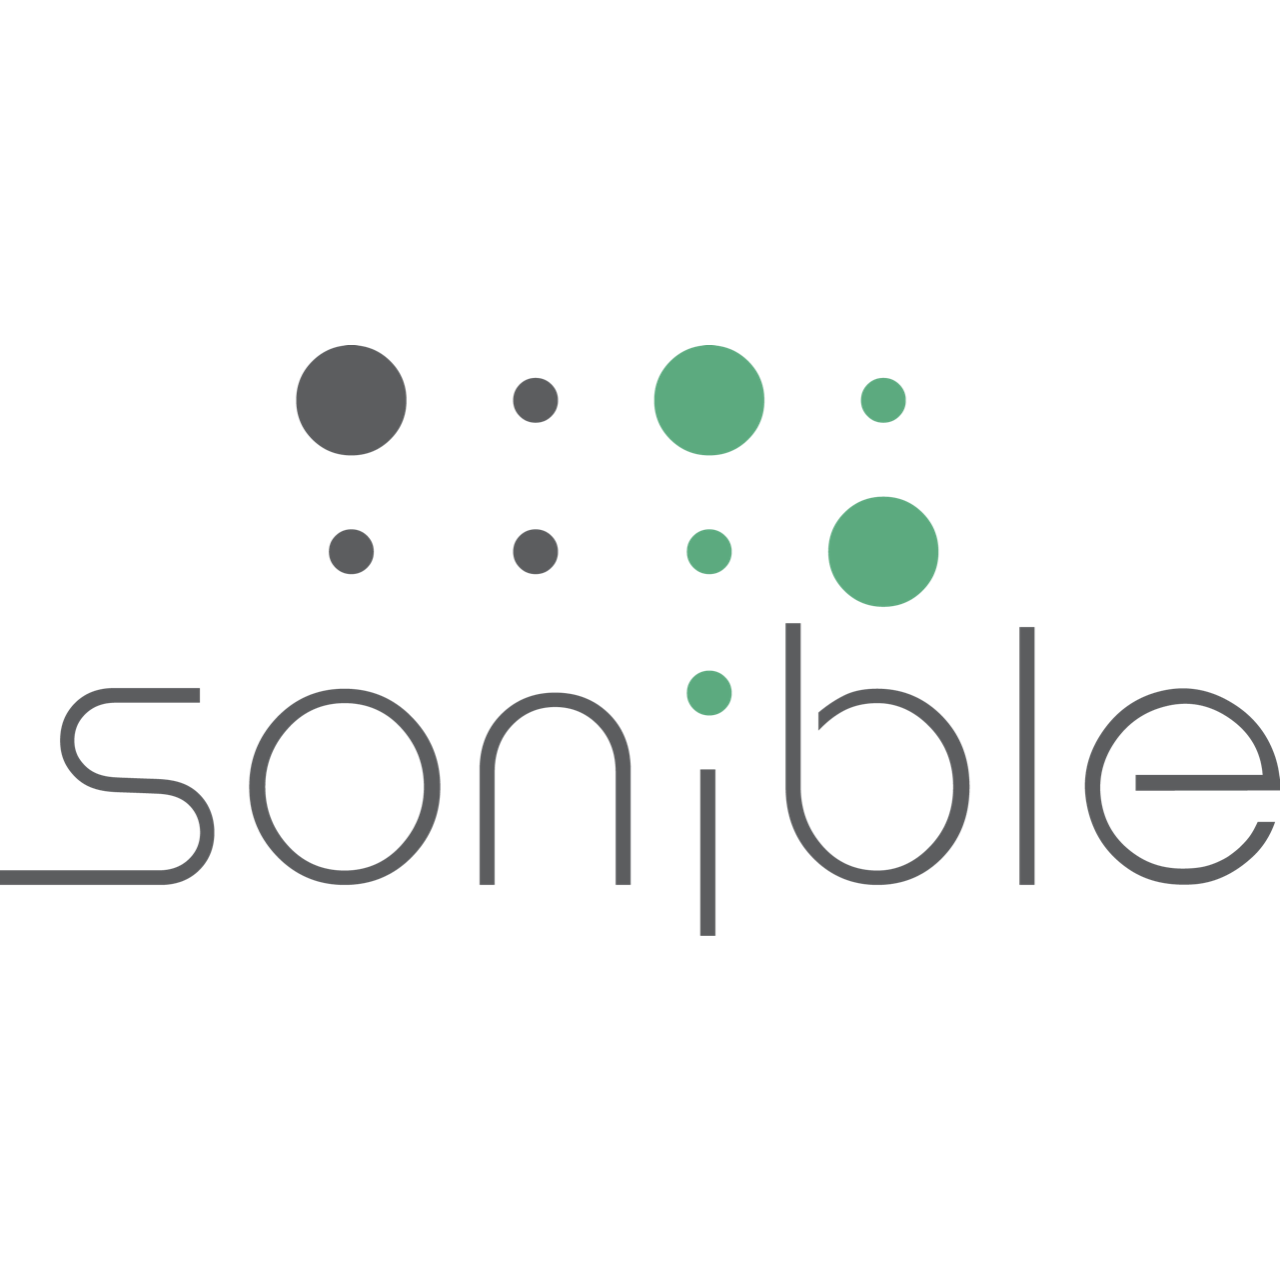 Sonible Logo